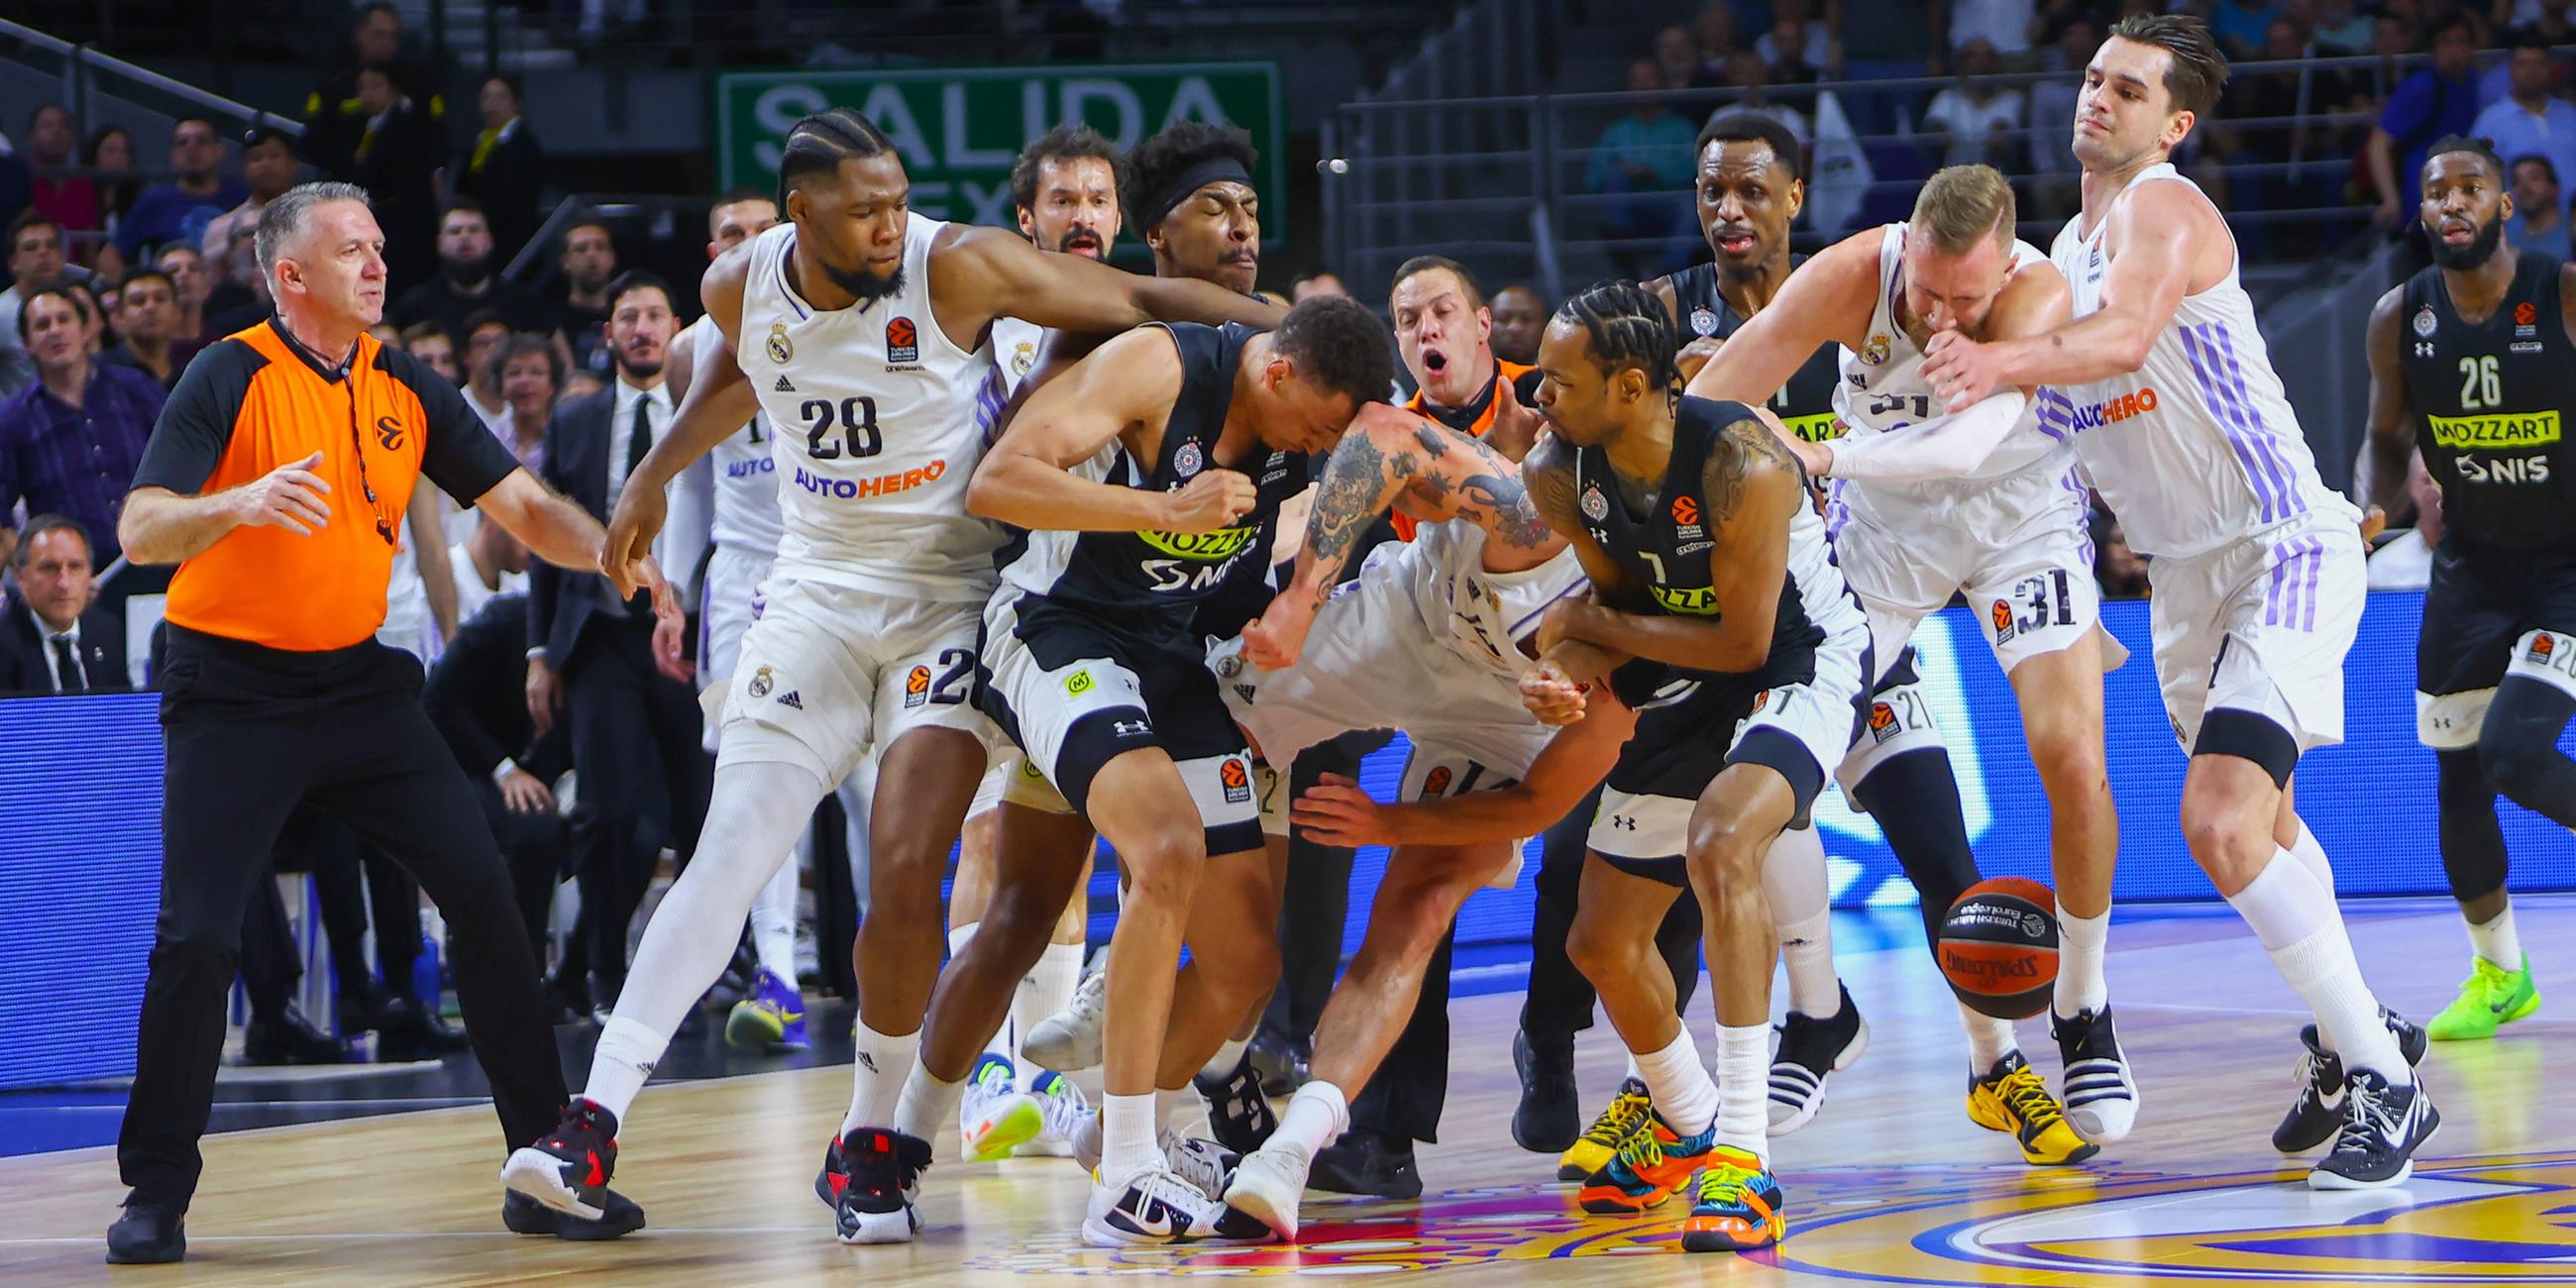 Massenschlägerei beim Basketball-EuroLeague Spiel zwischen Real Madrid und Partizan Belgrad